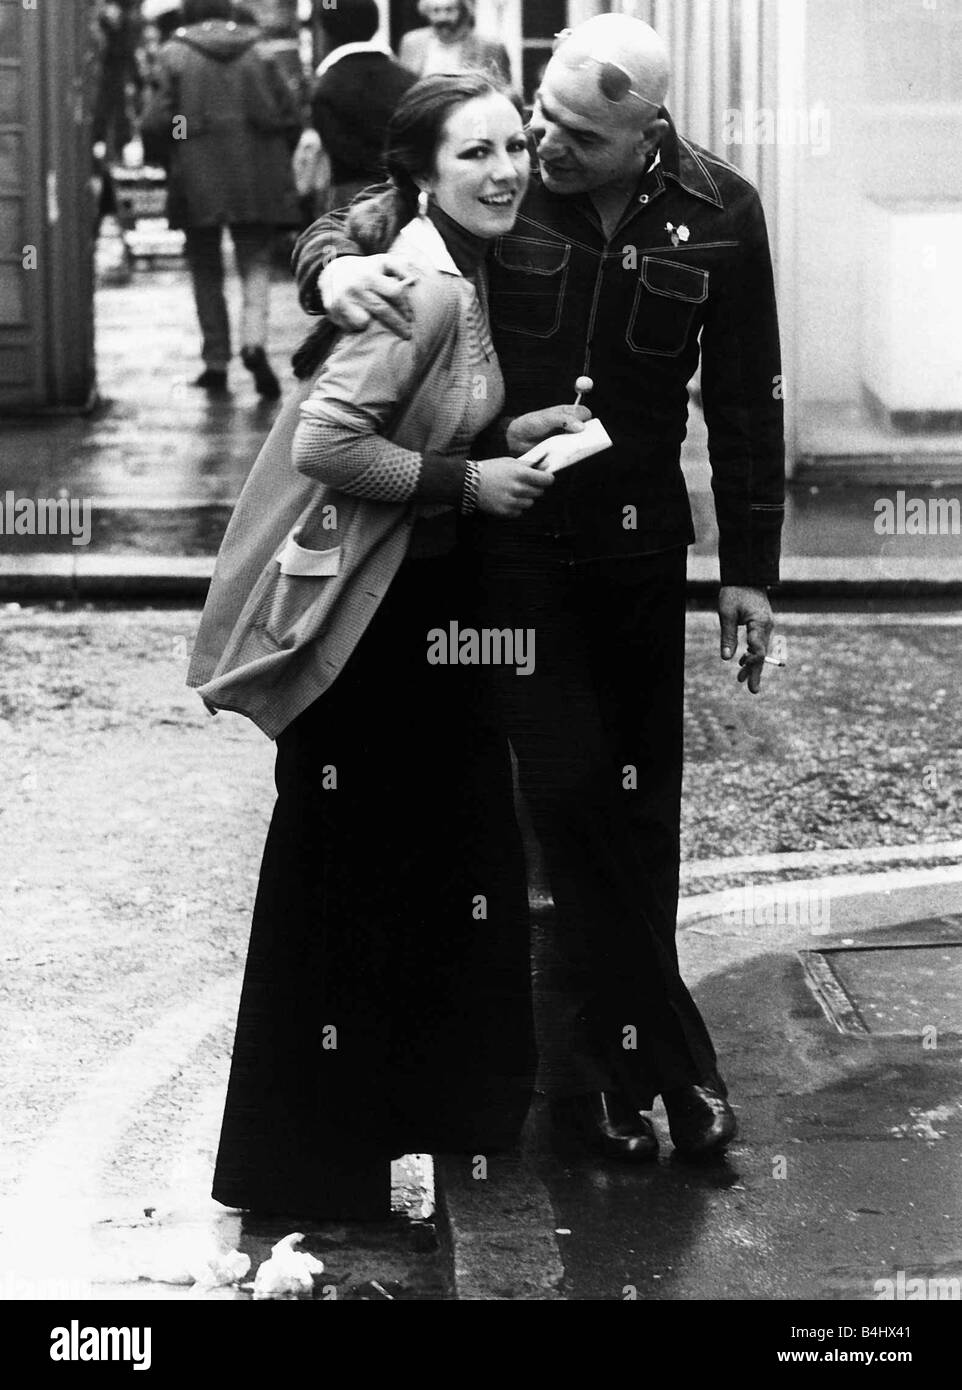 Telly Savalas Greek actor meets fan in London street 1978 Stock Photo